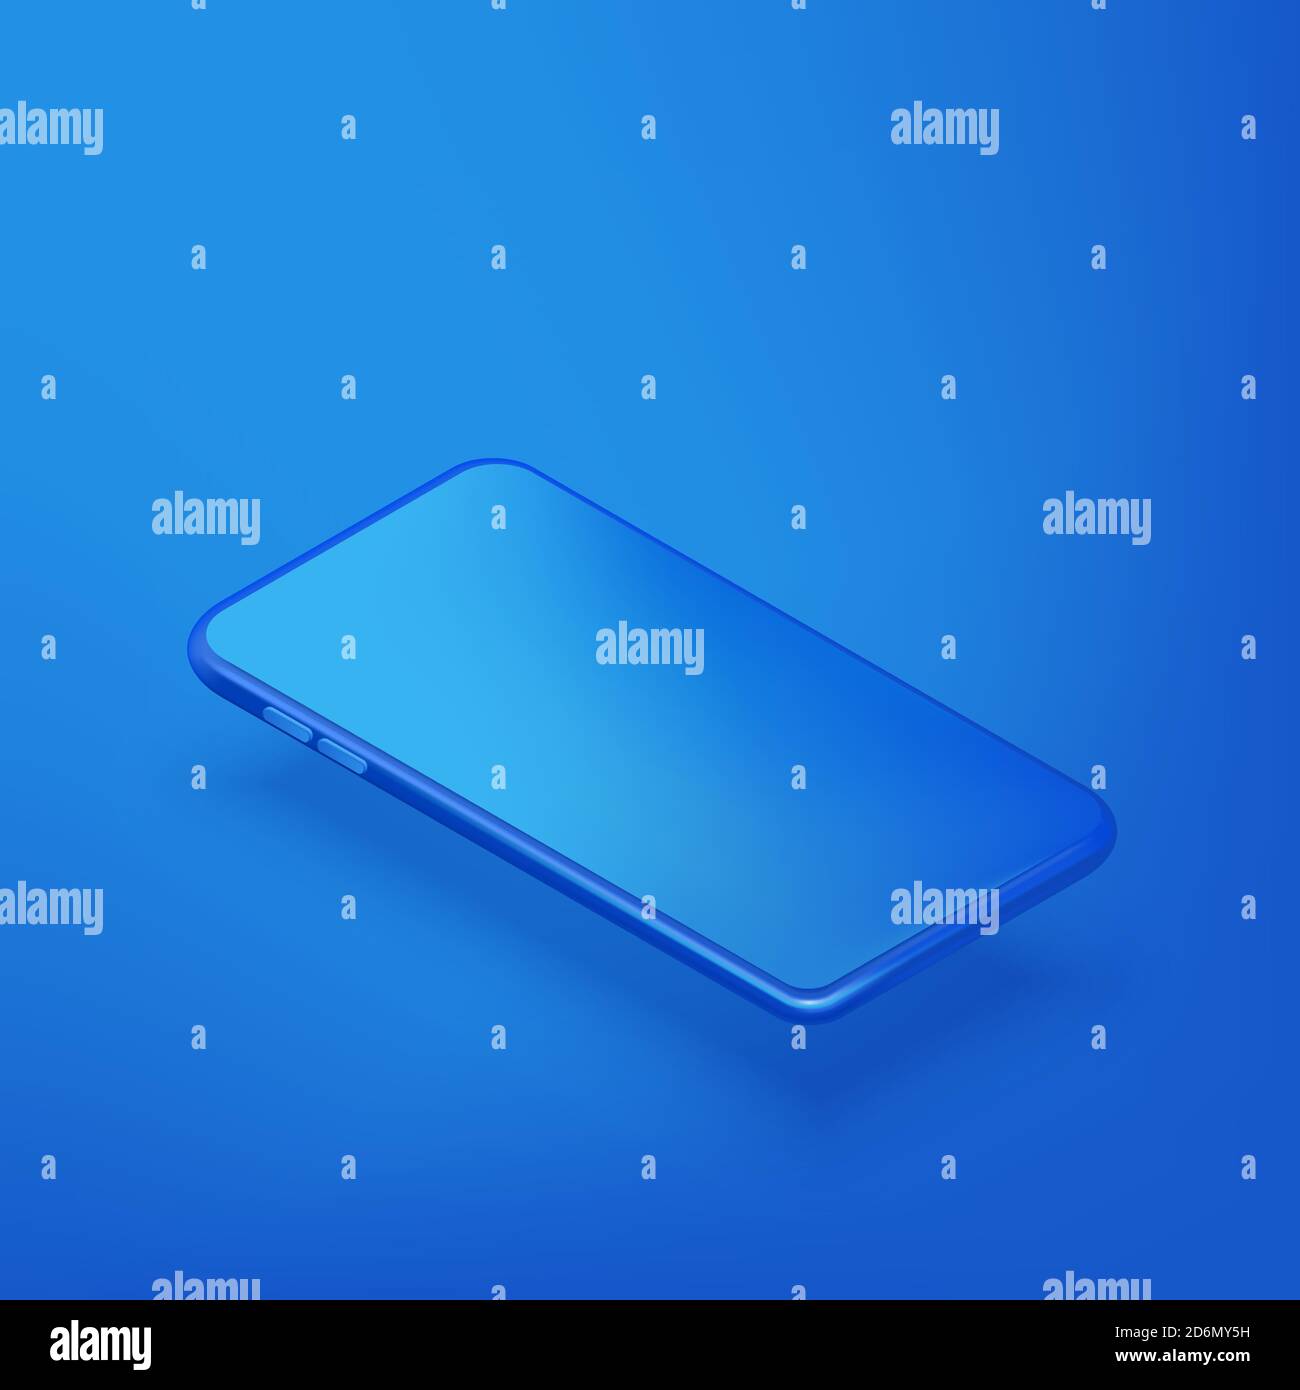 Modèle de maquette horizontale pour smartphone. Vecteur 3D réaliste illustration isométrique de téléphone mobile en plastique bleu sur fond bleu dégradé. Bla Illustration de Vecteur